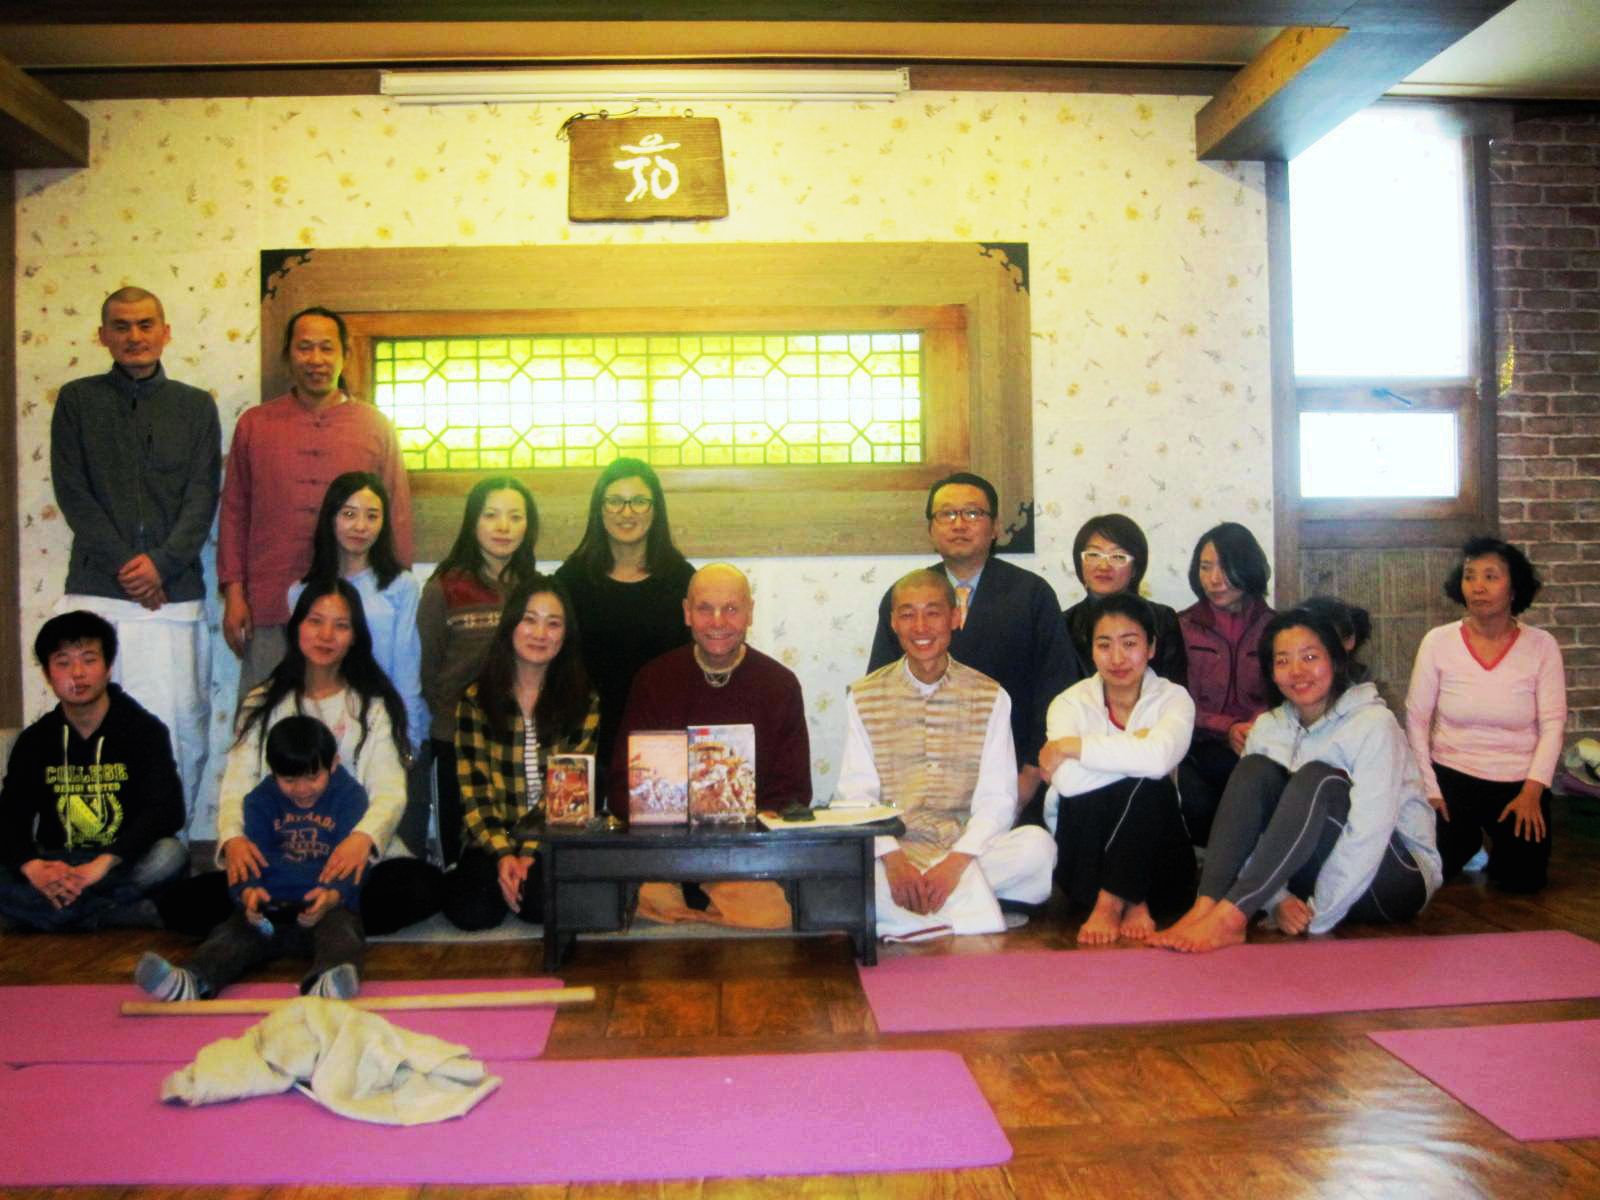 Los devotos coreanos felices con la edición del Bhagavad gita "tal como es" en coreano